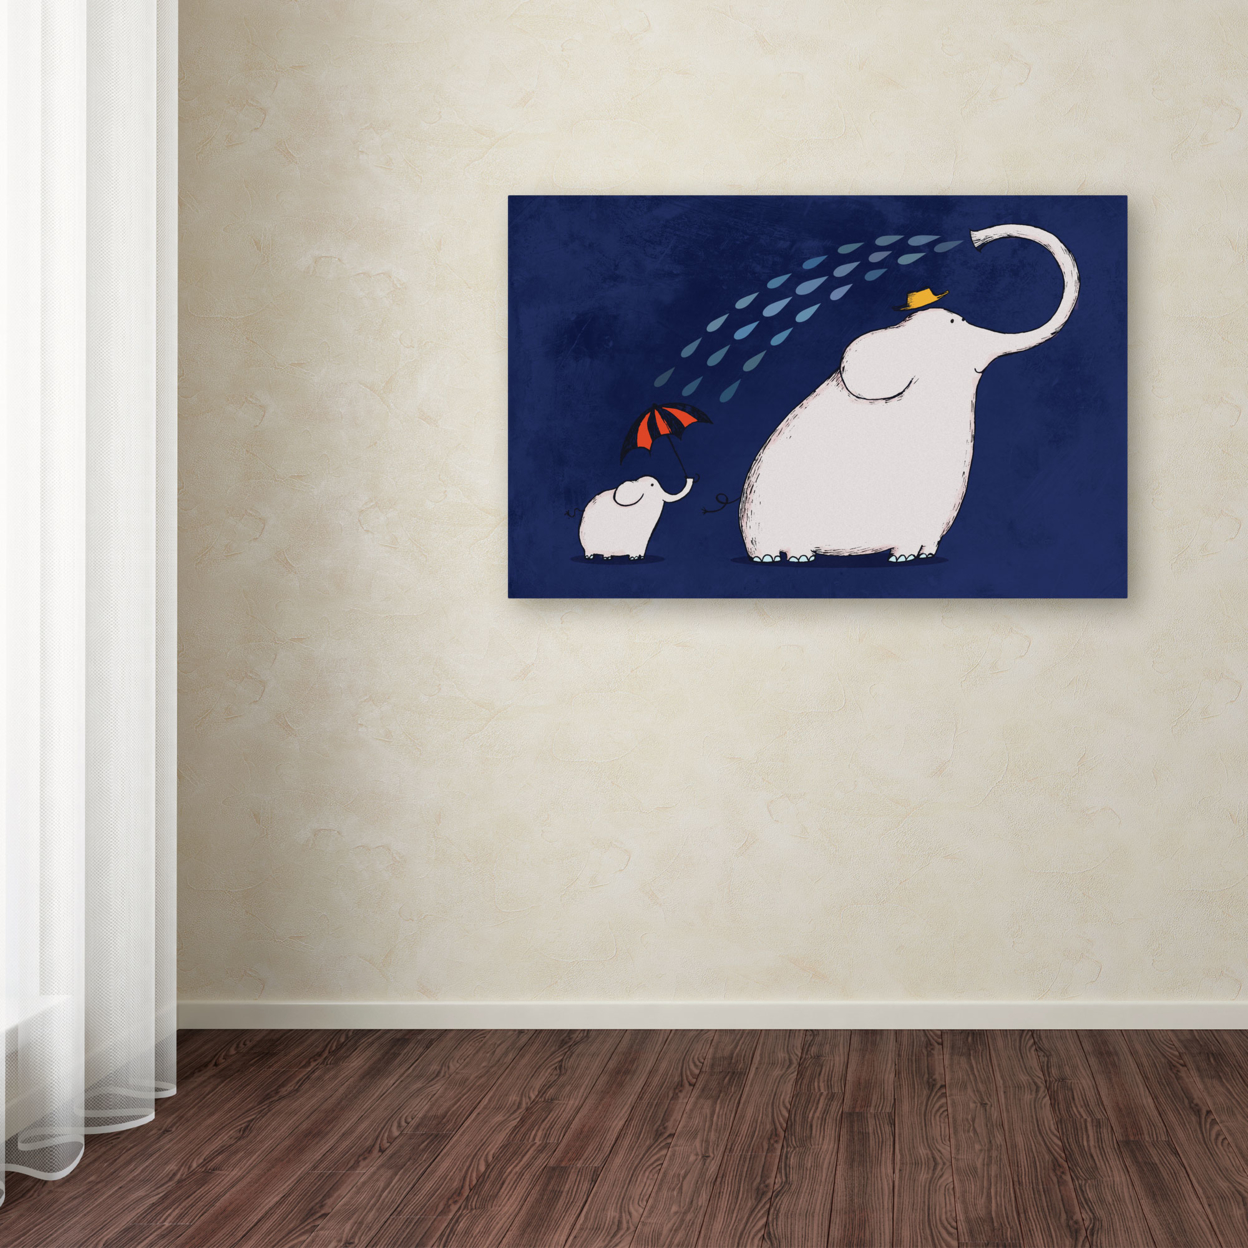 Carla Martell 'Umbrella Elephant' Canvas Art 16 X 24